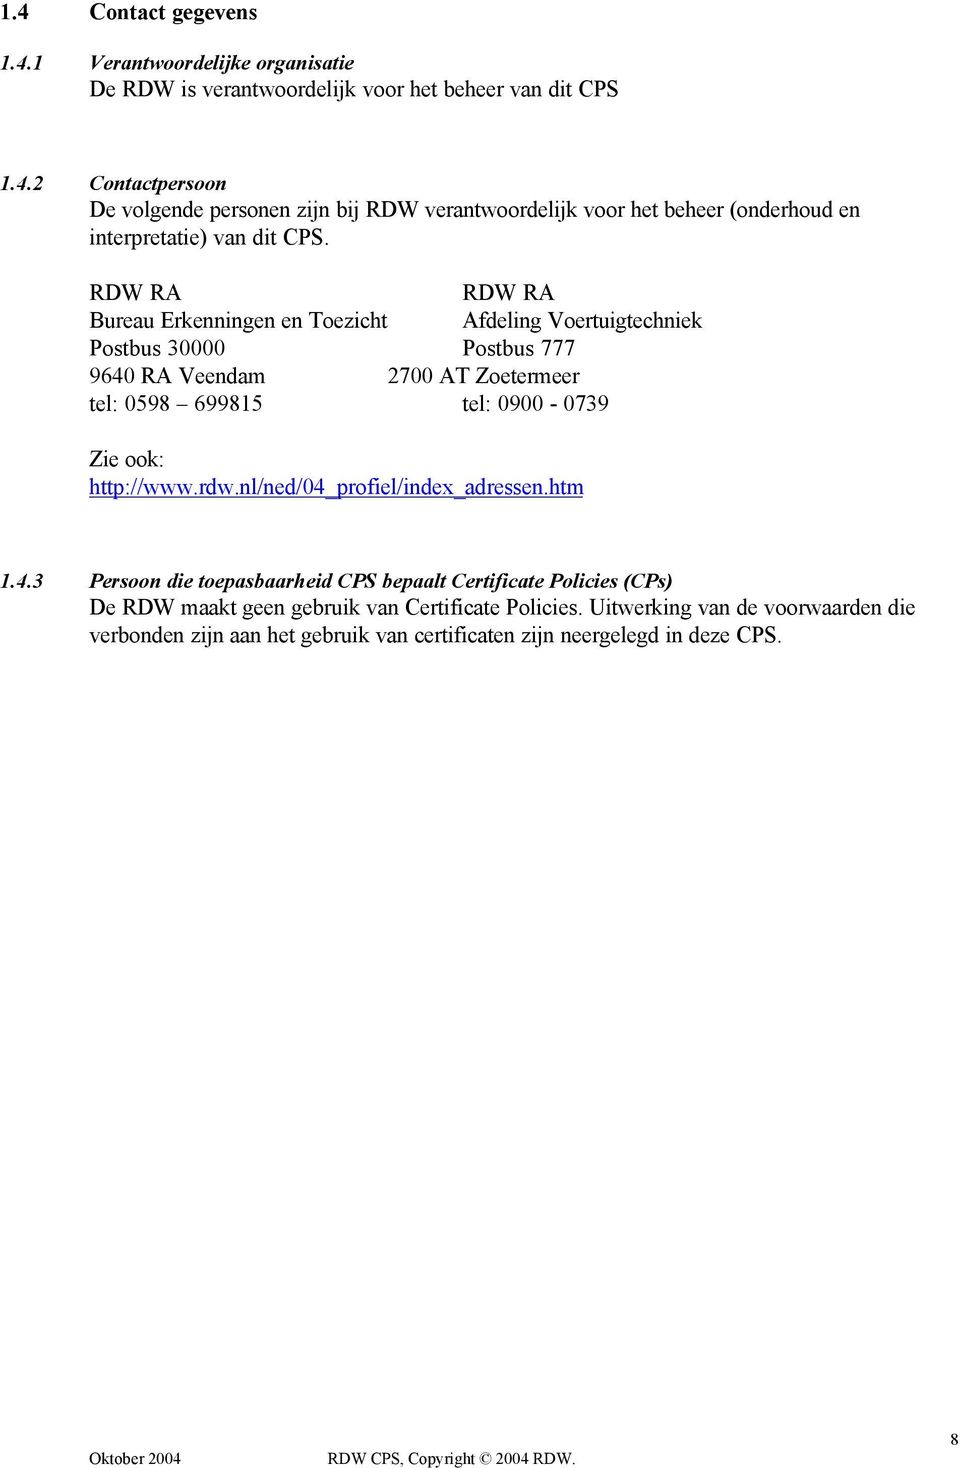 http://www.rdw.nl/ned/04_profiel/index_adressen.htm 1.4.3 Persoon die toepasbaarheid CPS bepaalt Certificate Policies (CPs) De RDW maakt geen gebruik van Certificate Policies.